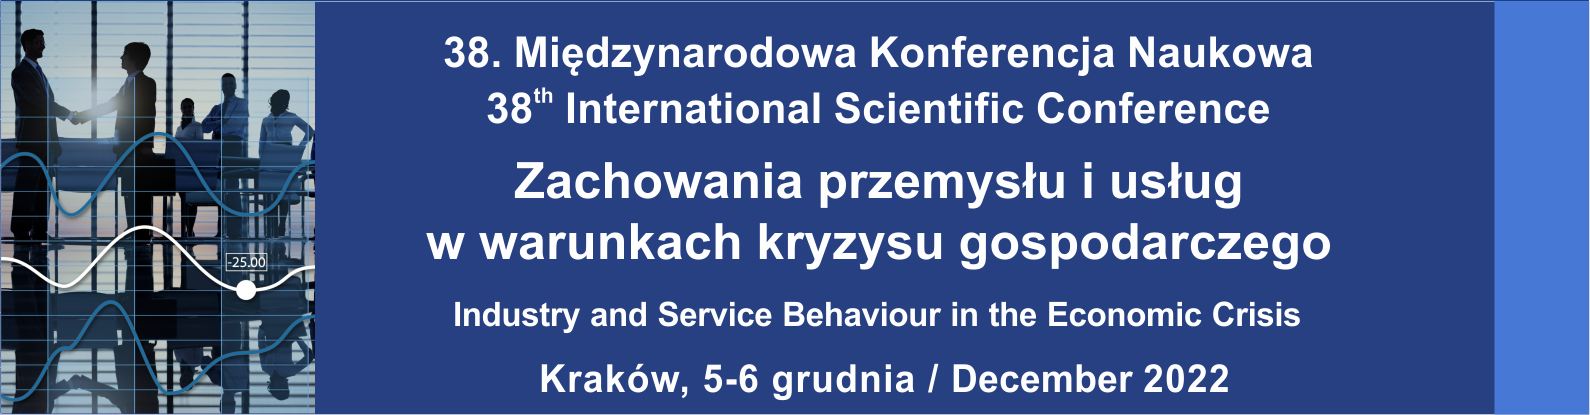 Międzynarodowa Konferencja Naukowa